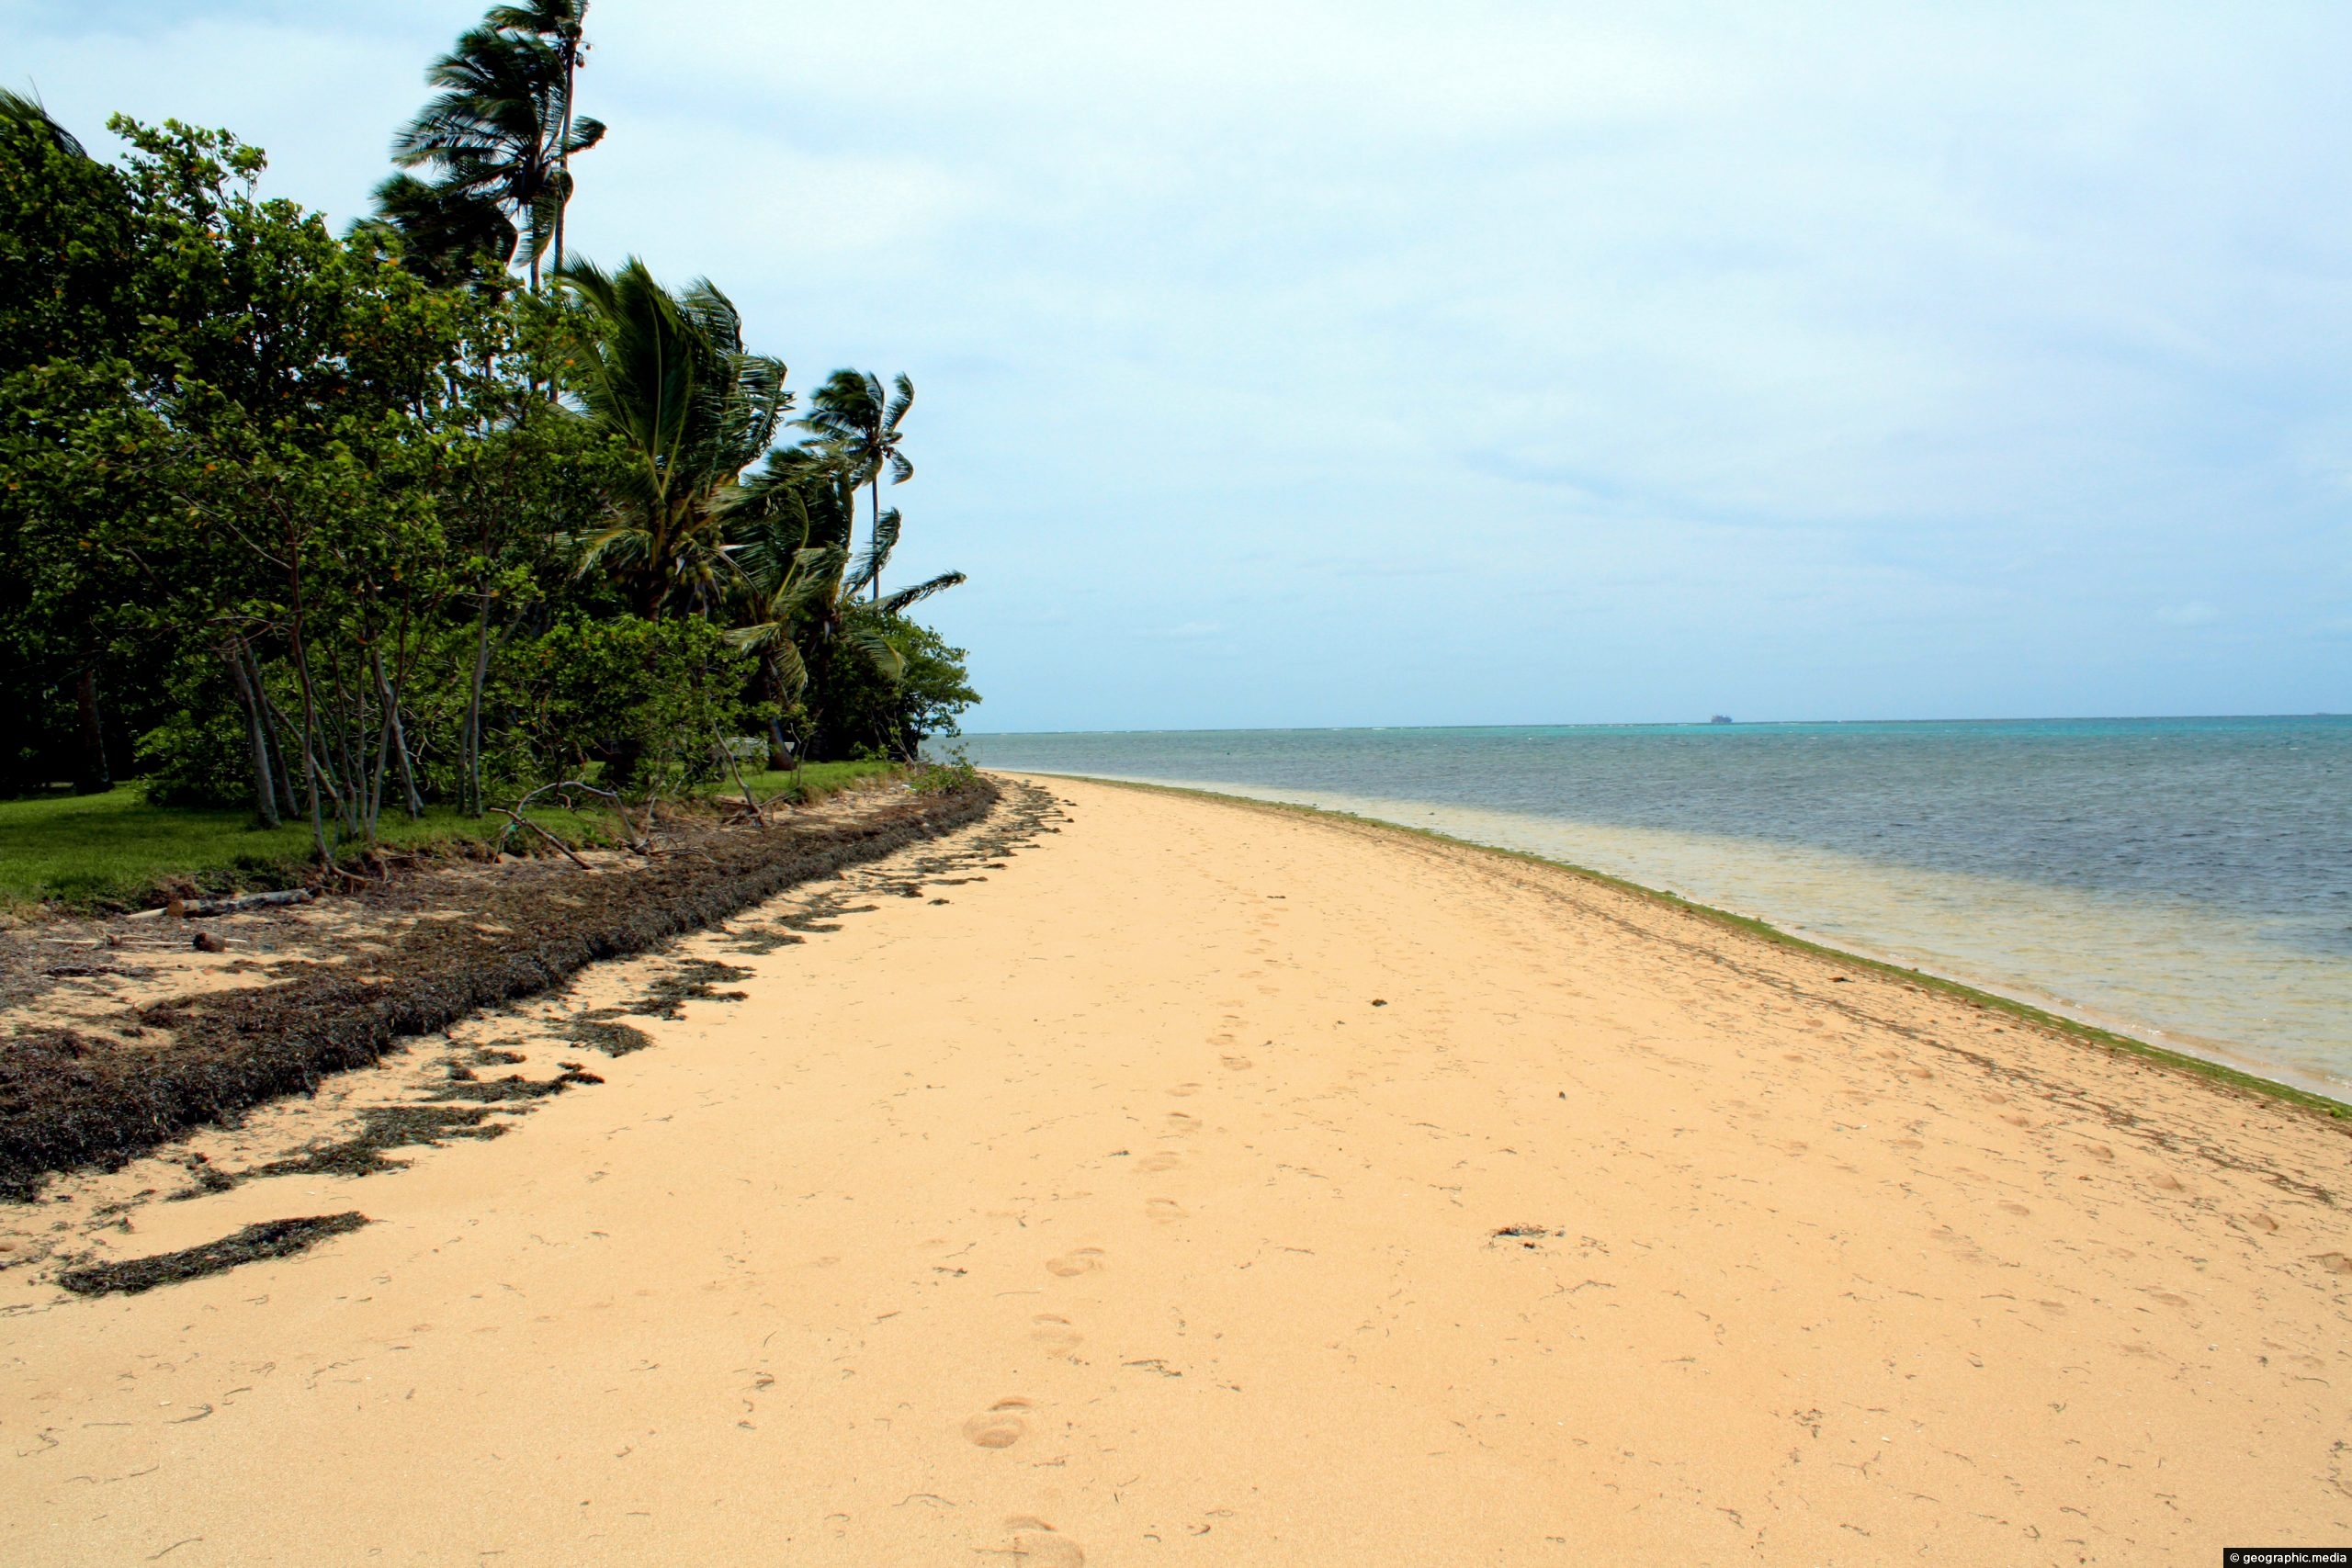 Beach on Atata Island in Tonga